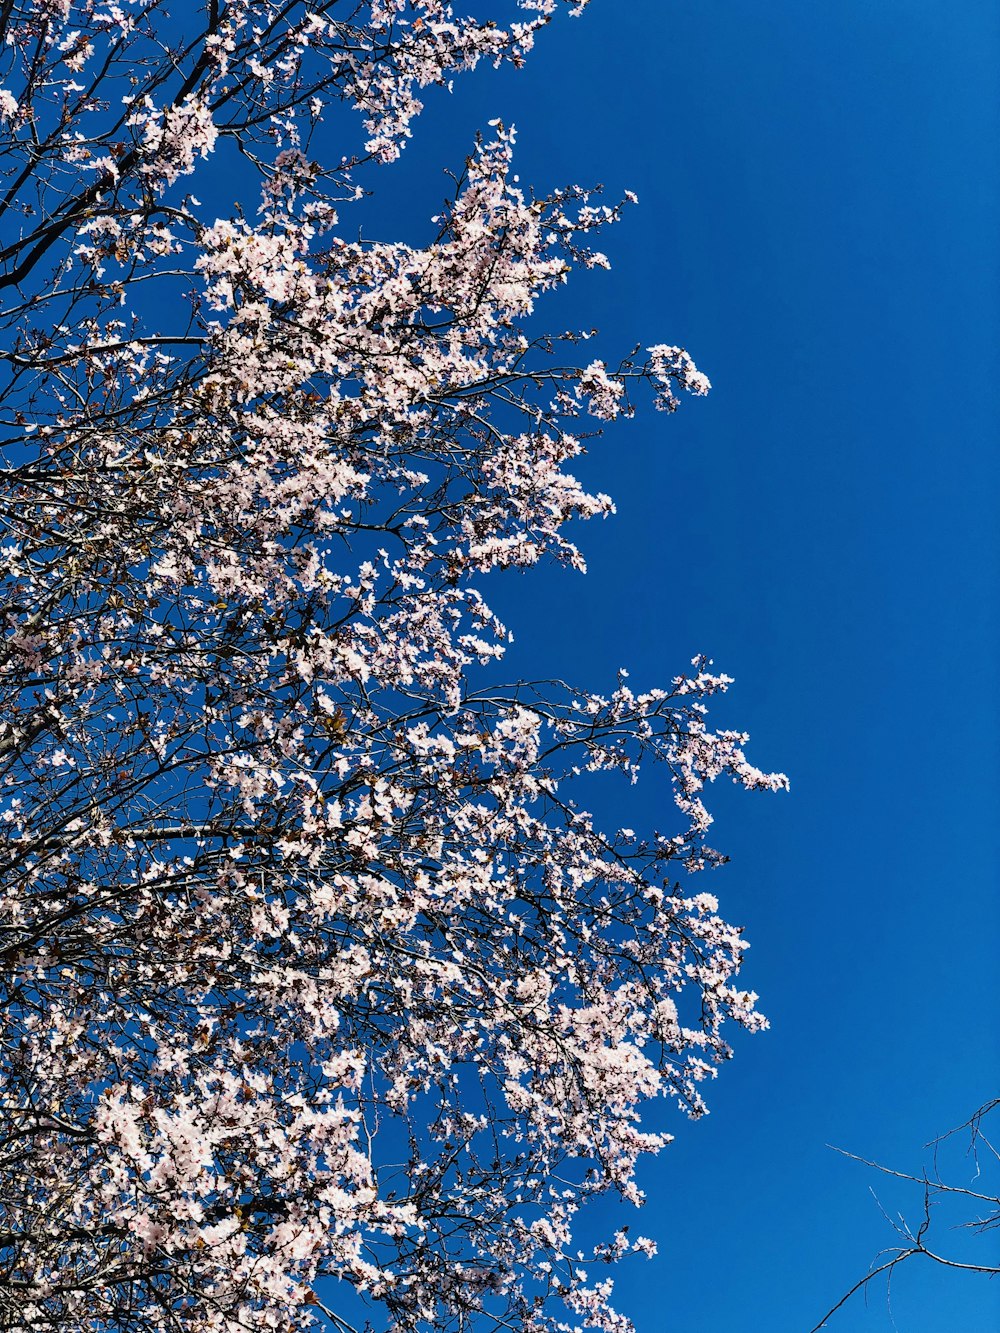 하얀 꽃과 푸른 하늘을 배경으로 한 나무